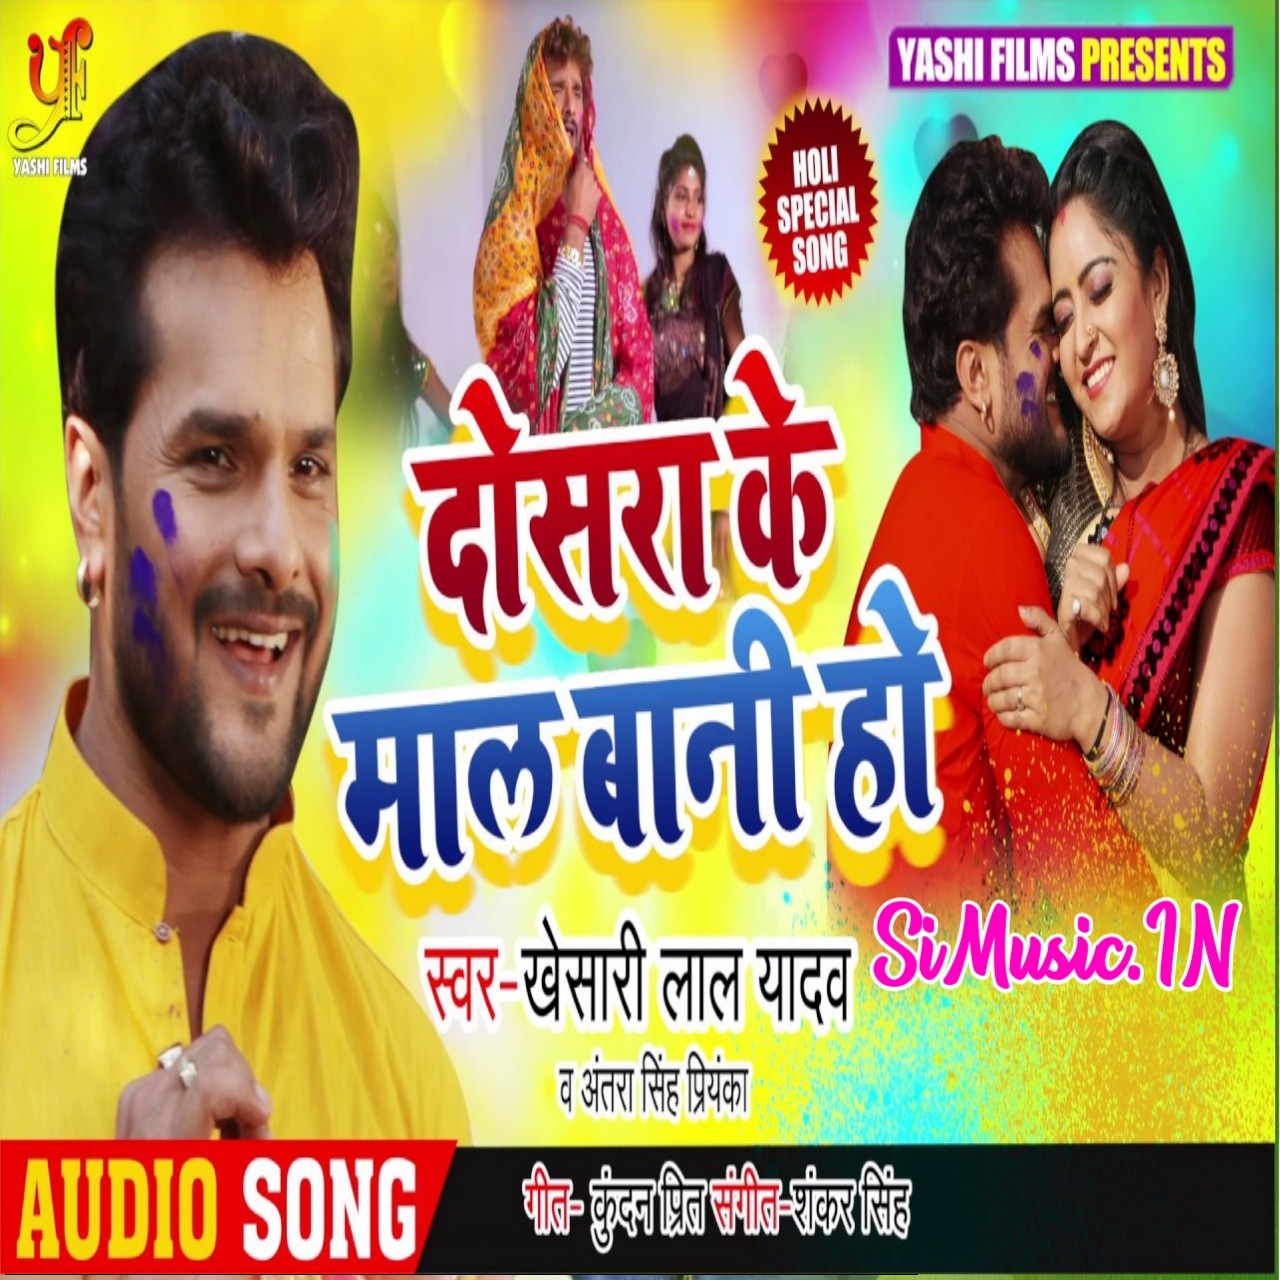 Dosara Ke Maal Bani Ho Khesari Lal Yadav Antra Singh Priyanka 2020 Mp3 Songs